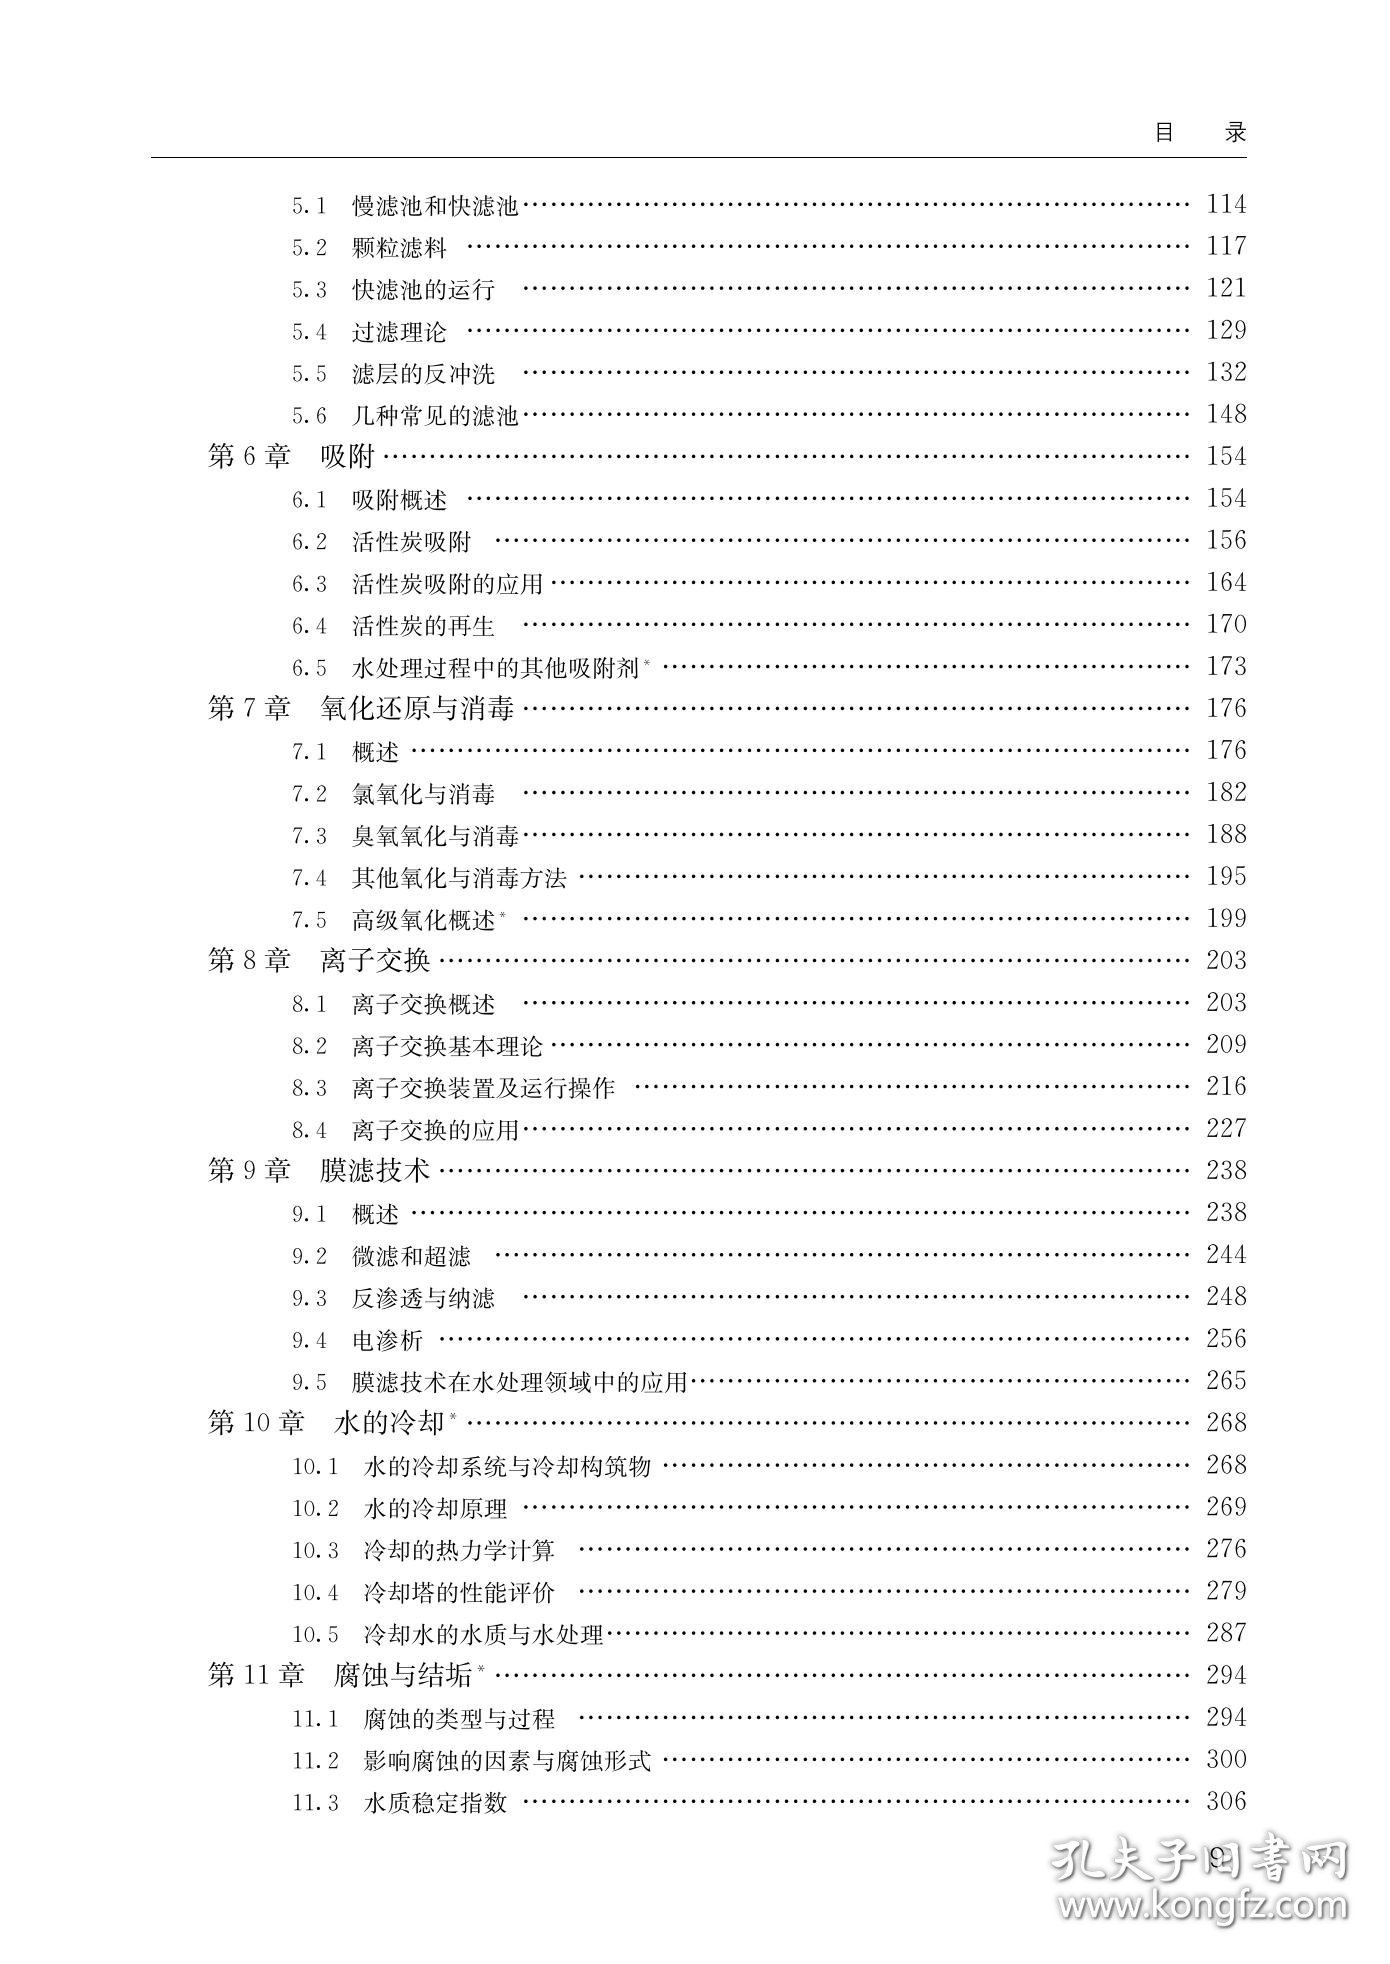 水质工程学第三版下册  李圭白 中国建筑工业出版